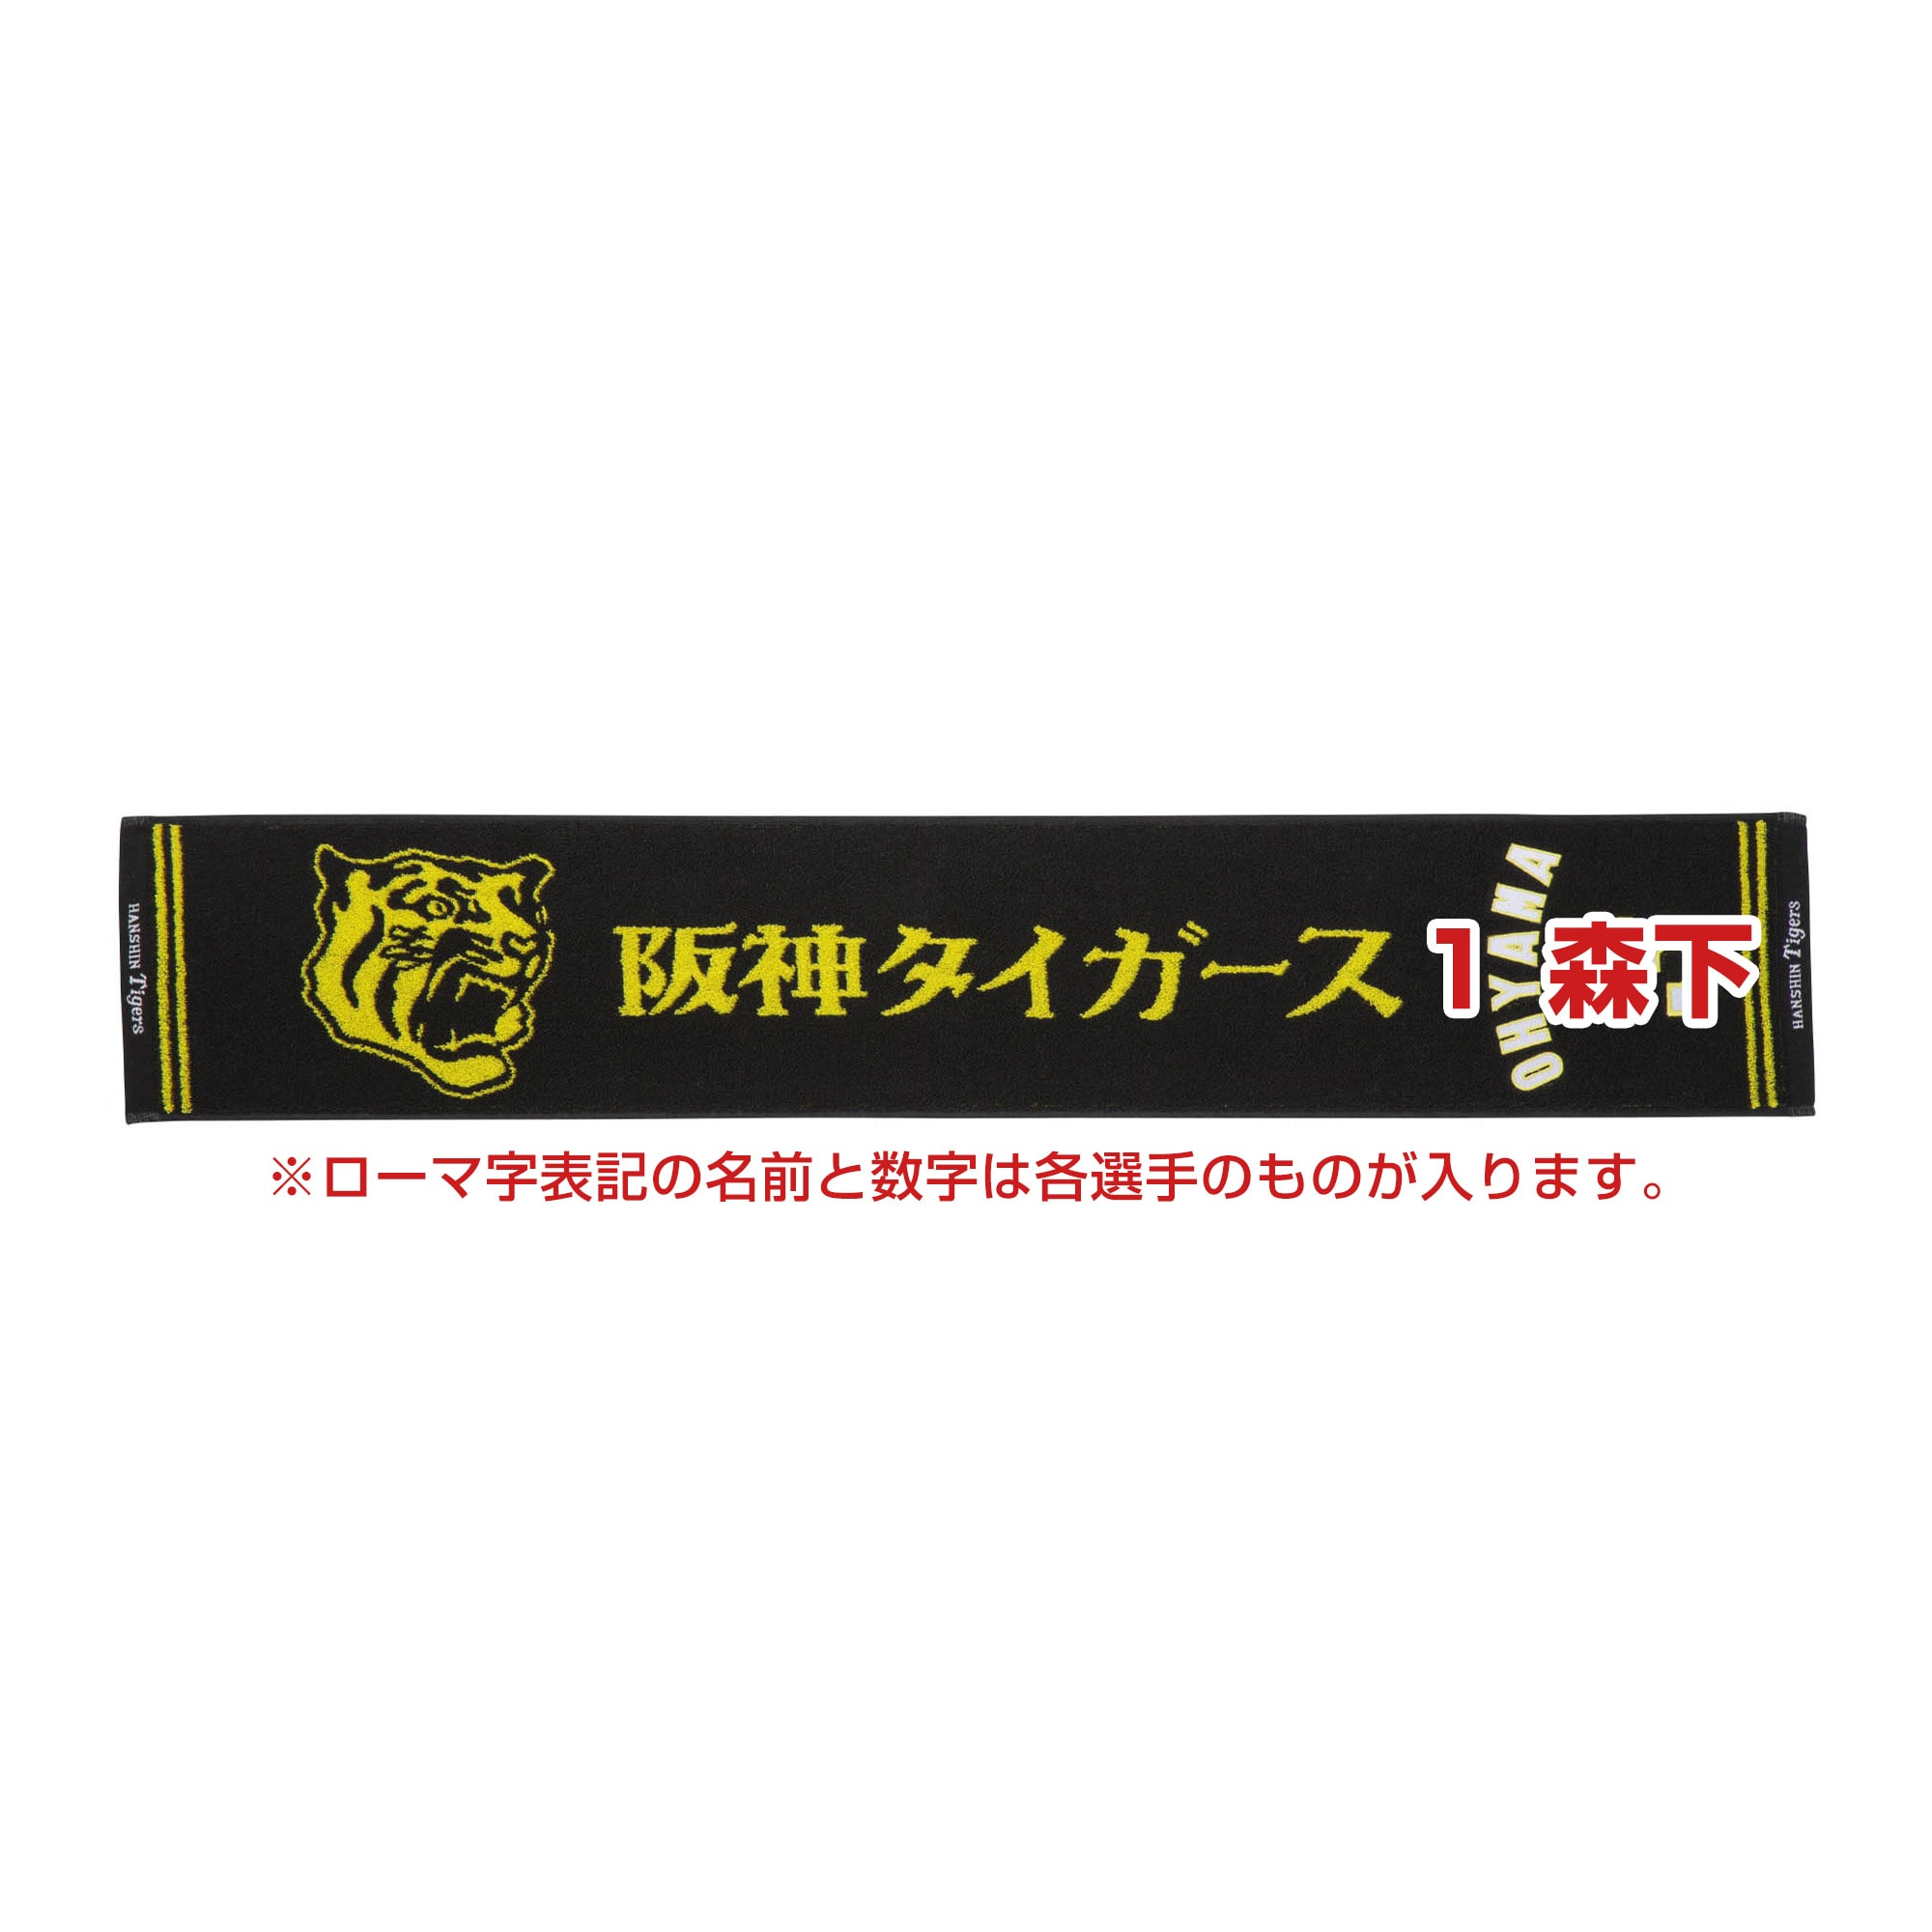 阪神タイガース 応援グッズ シャツ タオル リストサポーター